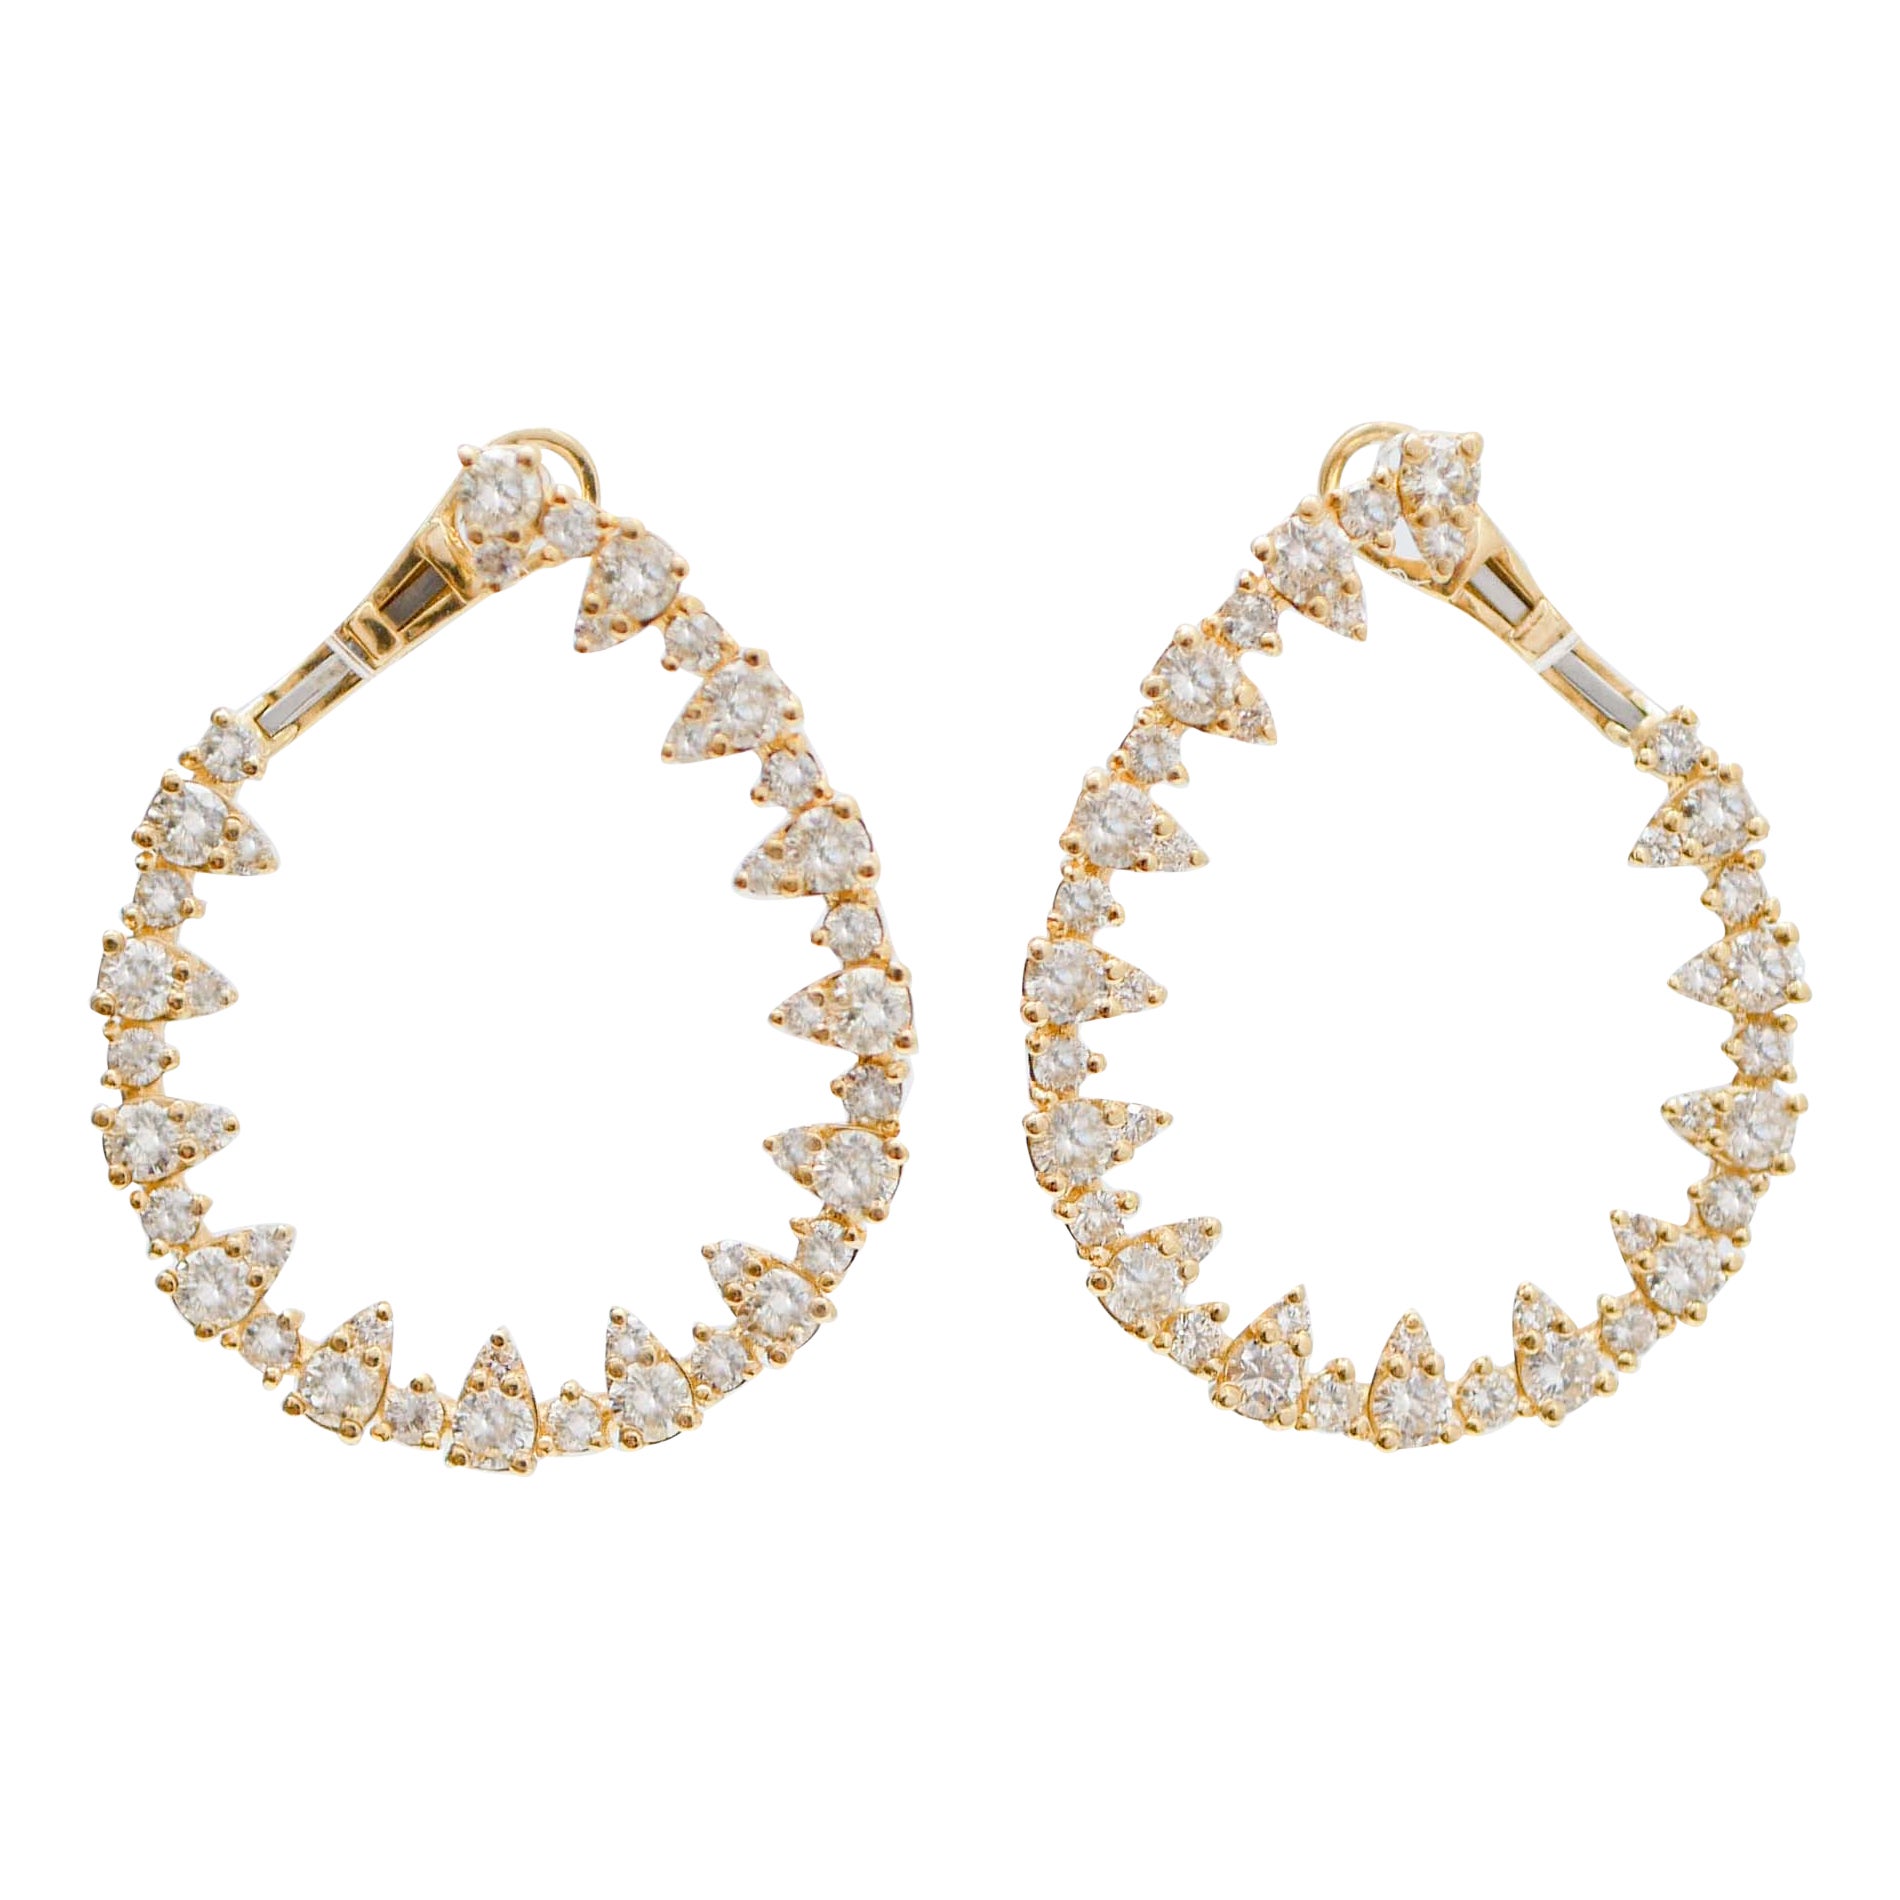 Boucles d'oreilles modernes en or jaune 18 carats et diamants.